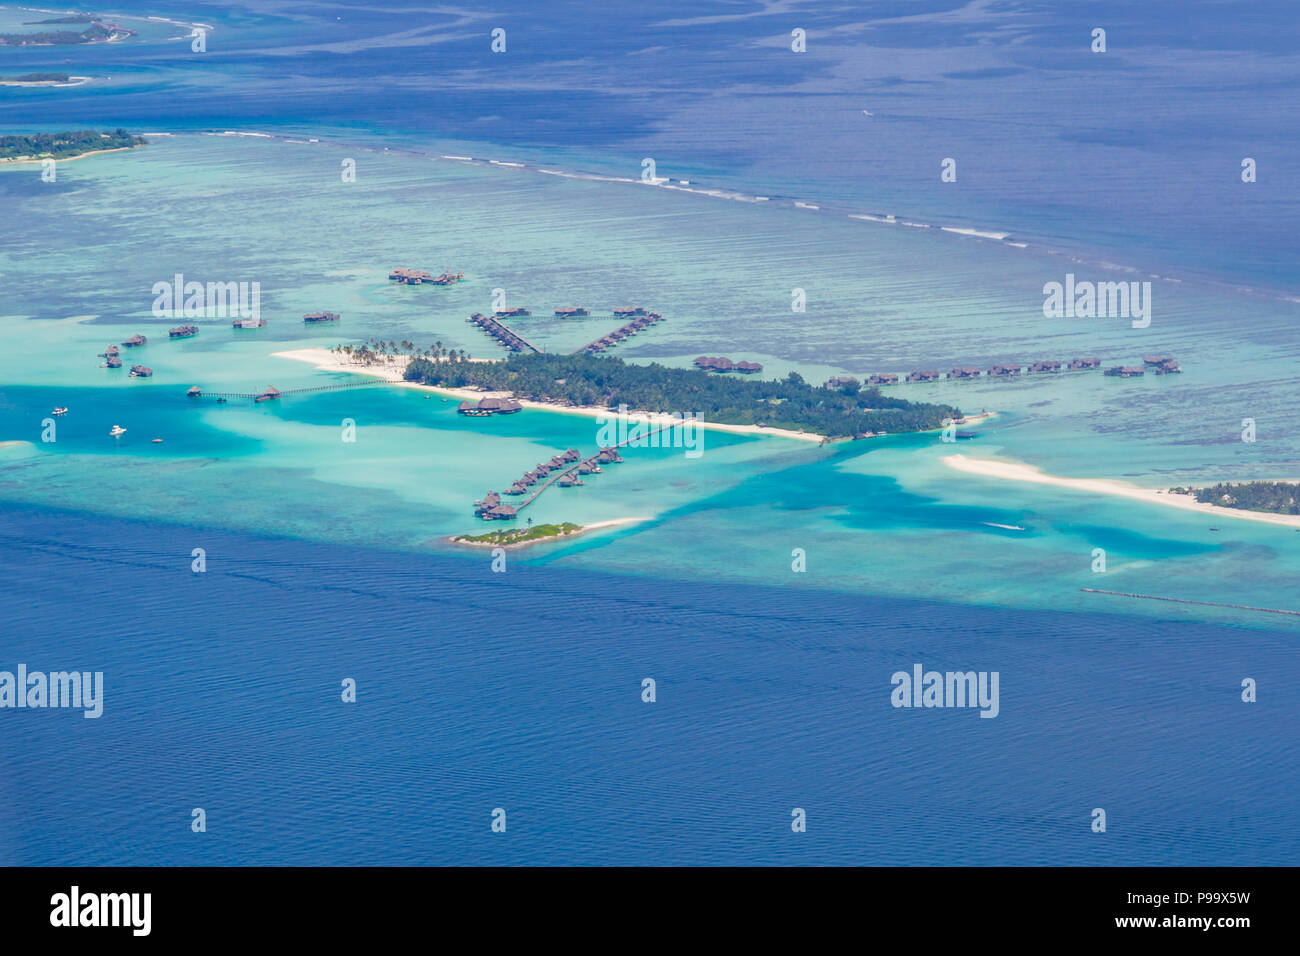 Incroyable Vue aérienne de Maldives island et plage. Vue d'avion ou de drone d'atolls et des îles et de la mer Banque D'Images